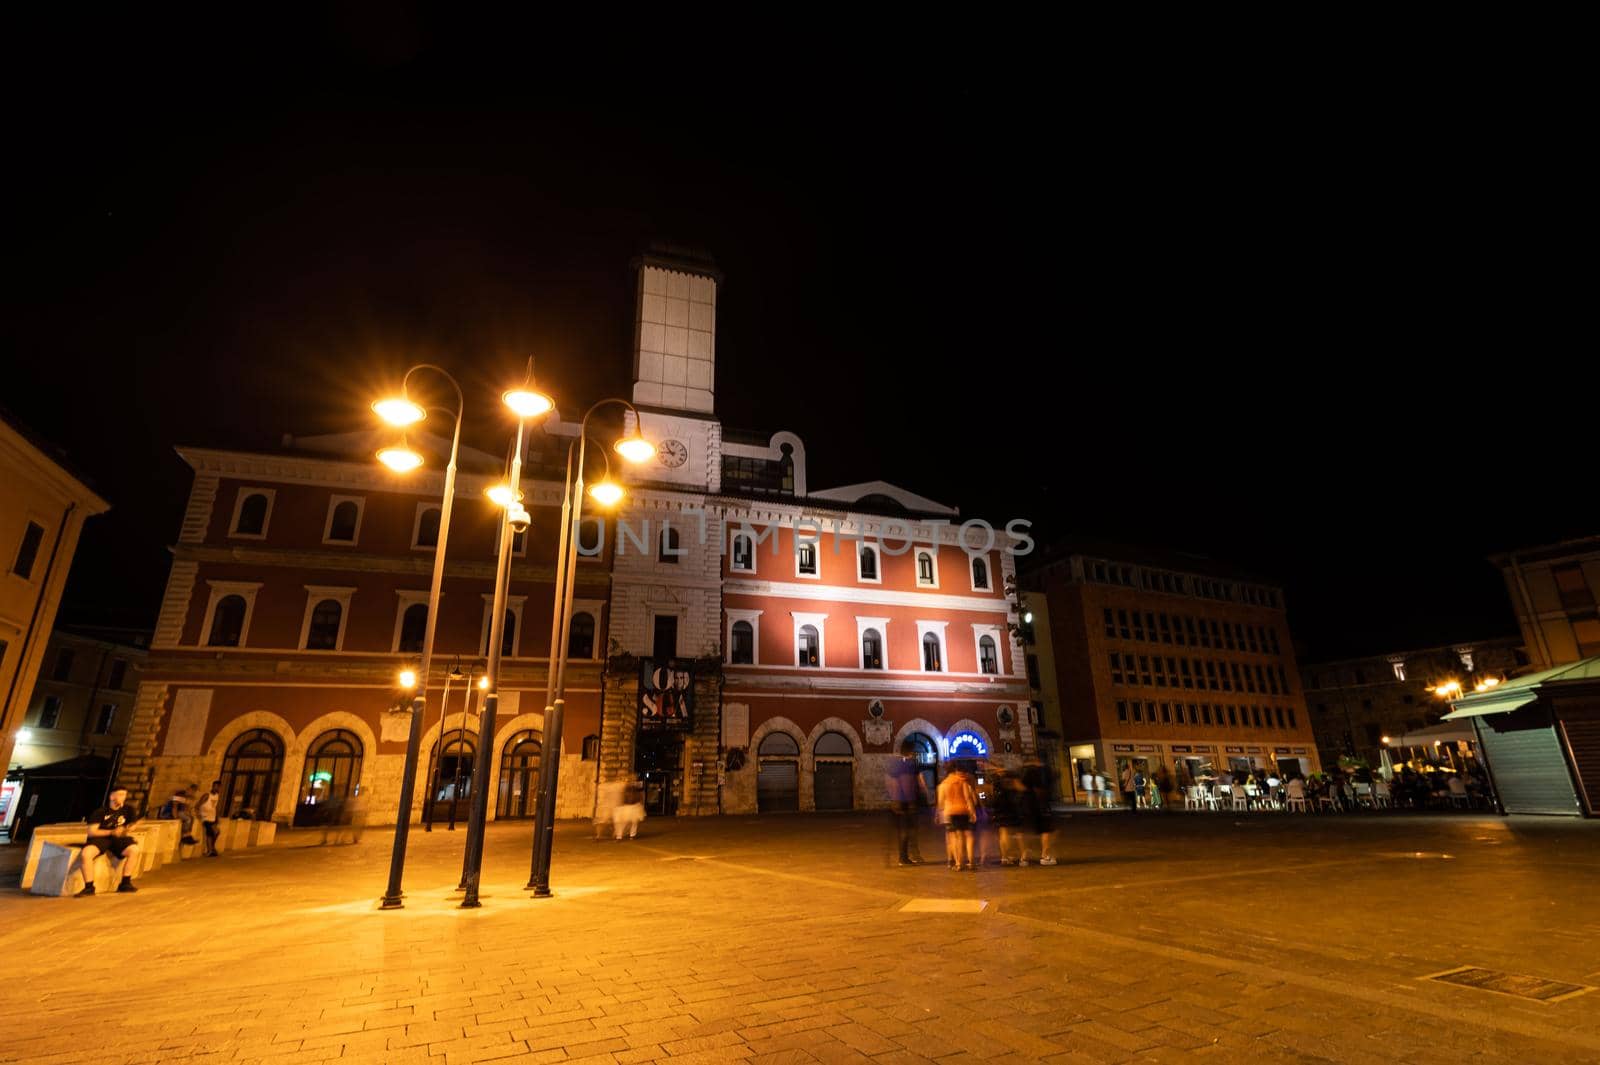 terni,italy june 30 2021:Terni Piazza Europa view at night in Terni